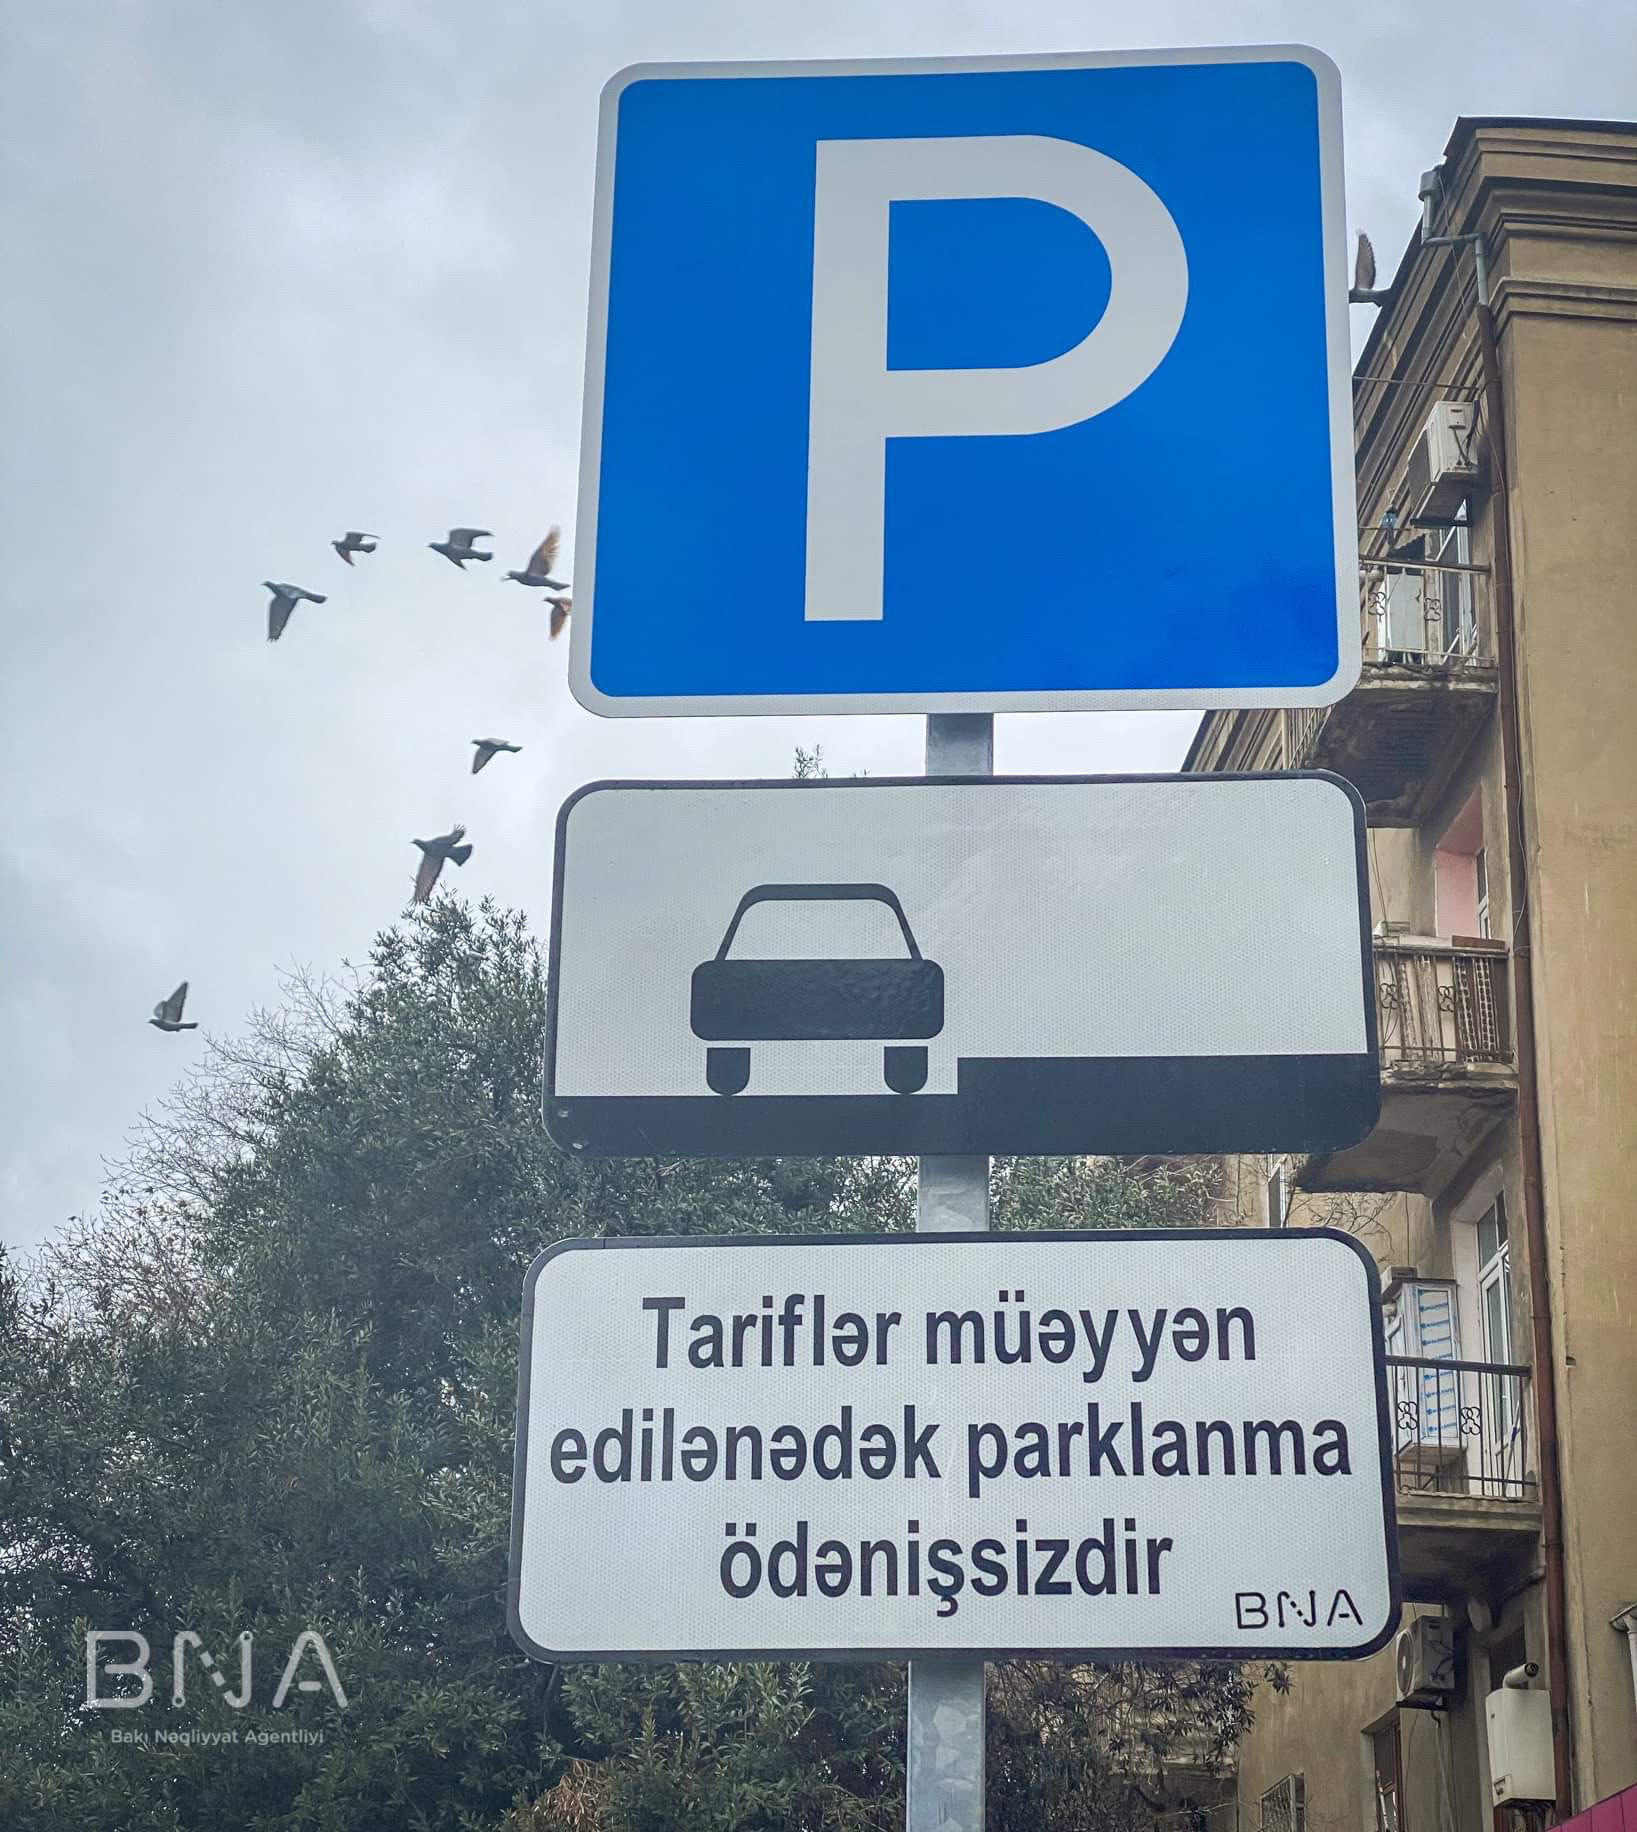 Bakıda bu ərazilərdə parklanma pulsuz oldu - Lövhələrə diqqət edin (FOTO)